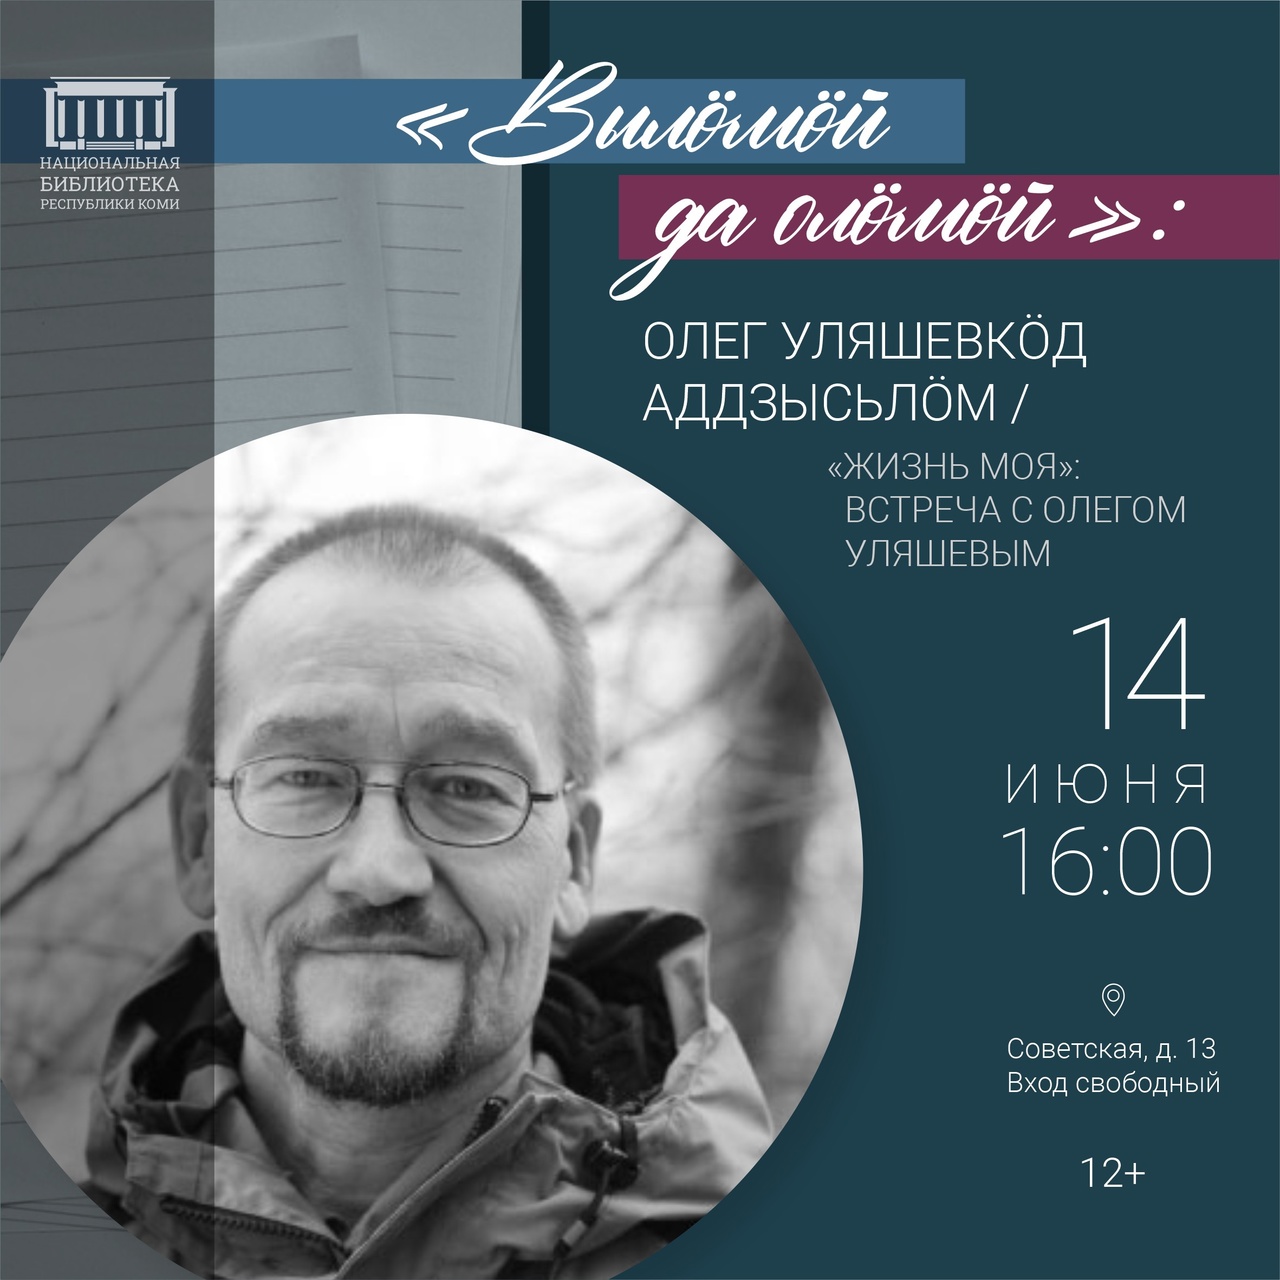 В Национальной библиотеке РК состоится творческая встреча с Олегом Уляшевым "Жизнь моя" (14 июня, в 16:00)